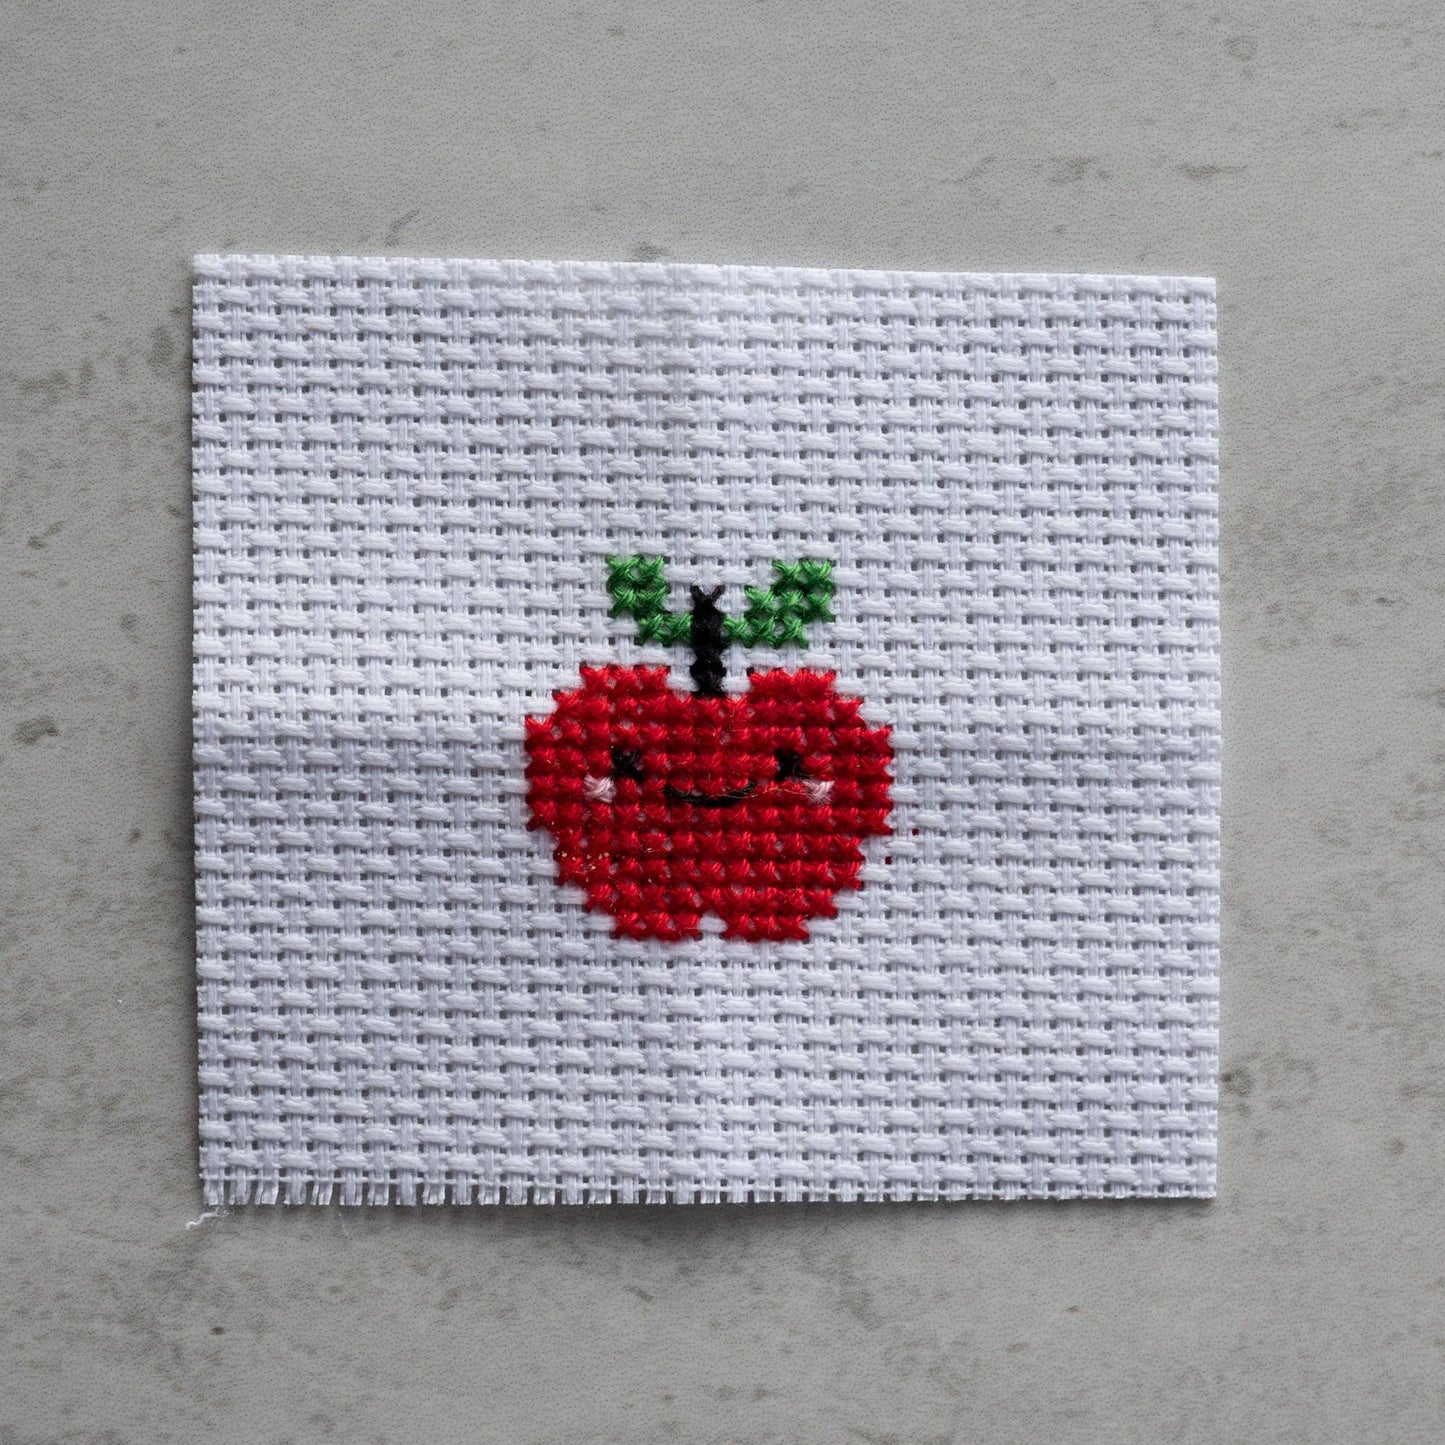 Kawaii Apple Mini Cross Stitch Kit In A Matchbox